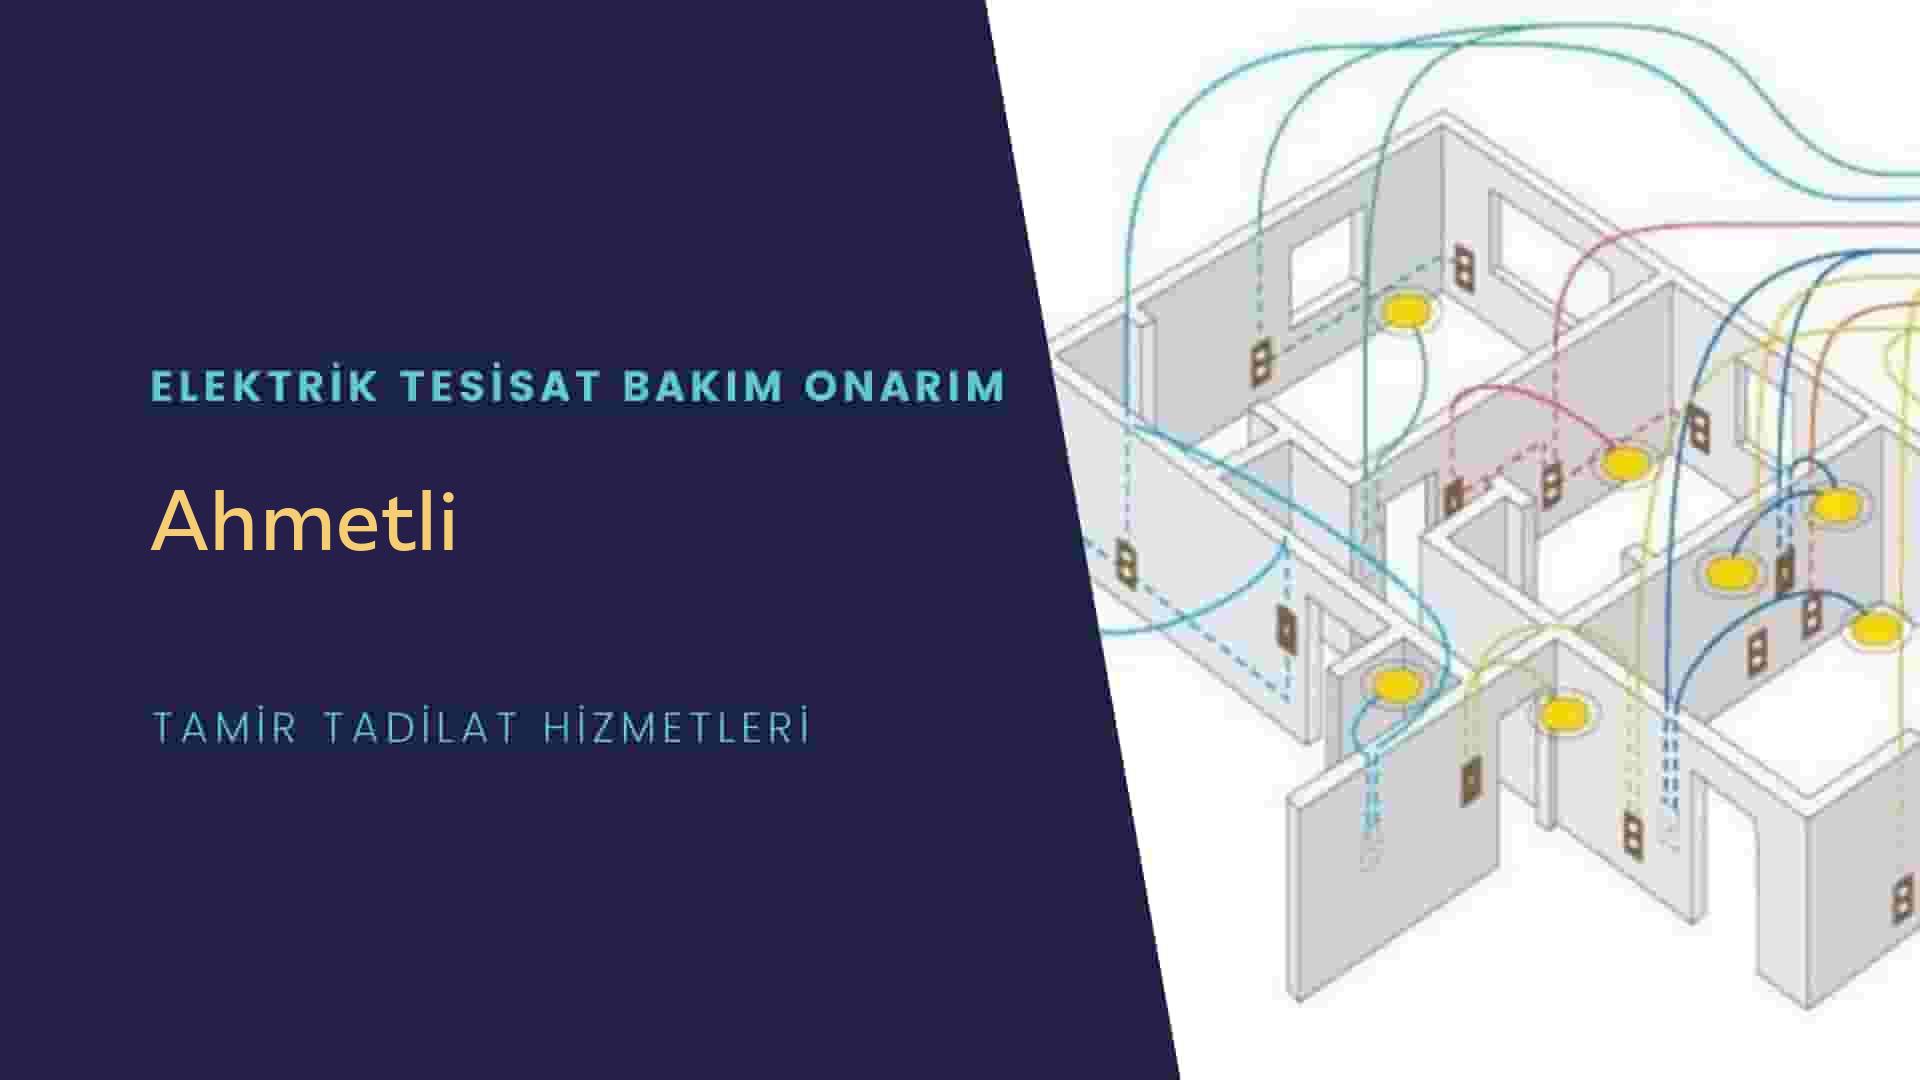 Ahmetli'de elektrik tesisatı ustalarımı arıyorsunuz doğru adrestenizi Ahmetli elektrik tesisatı ustalarımız 7/24 sizlere hizmet vermekten mutluluk duyar.